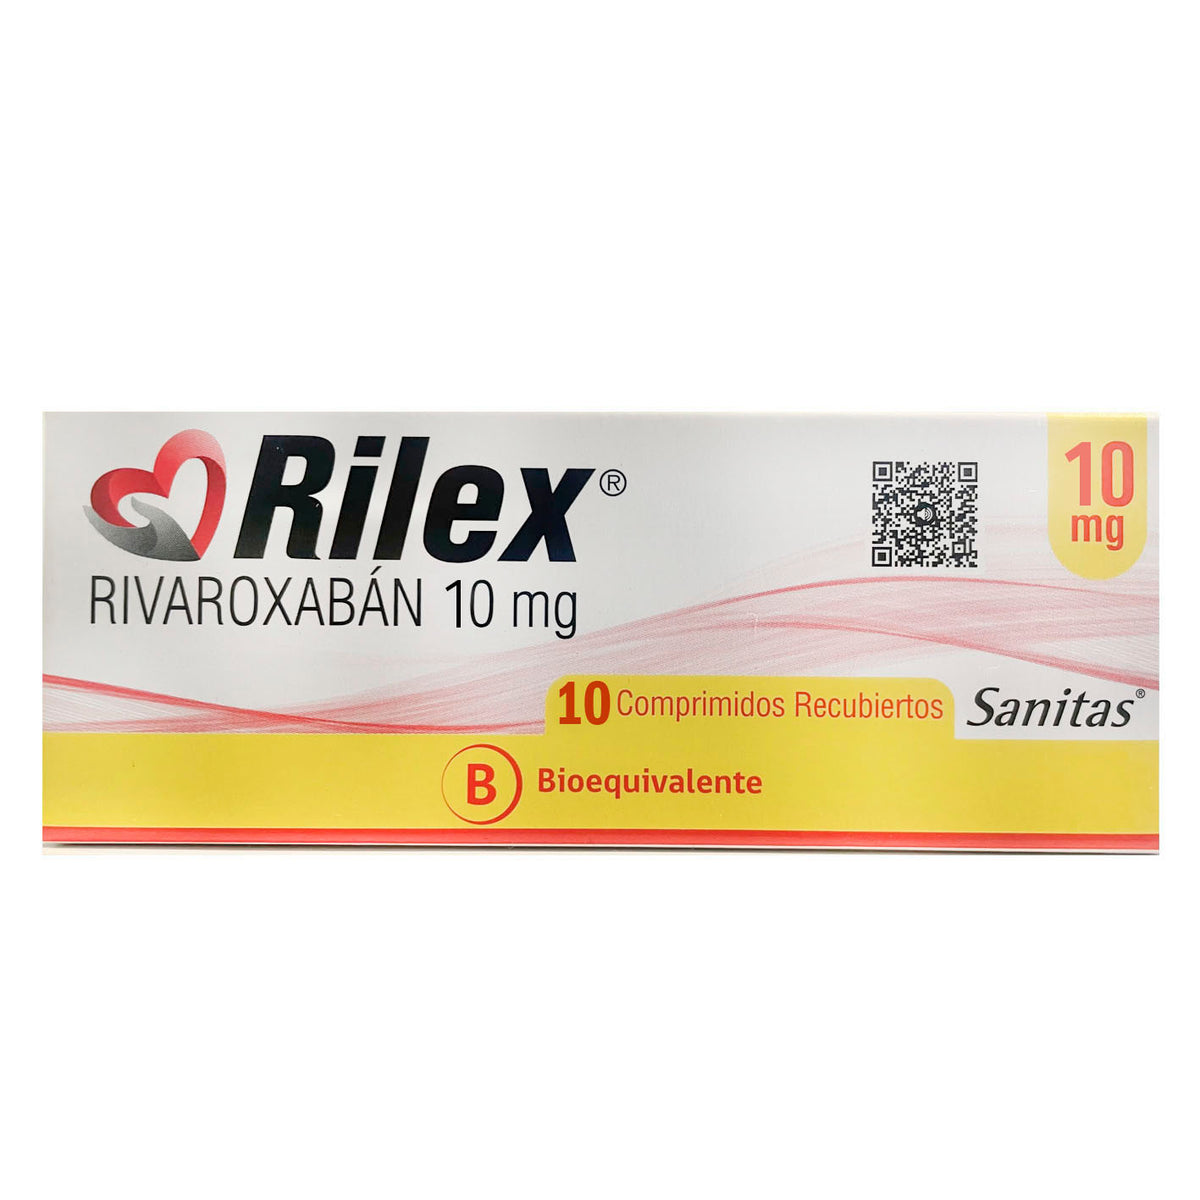 Rilex Comprimidos Recubiertos 10mg